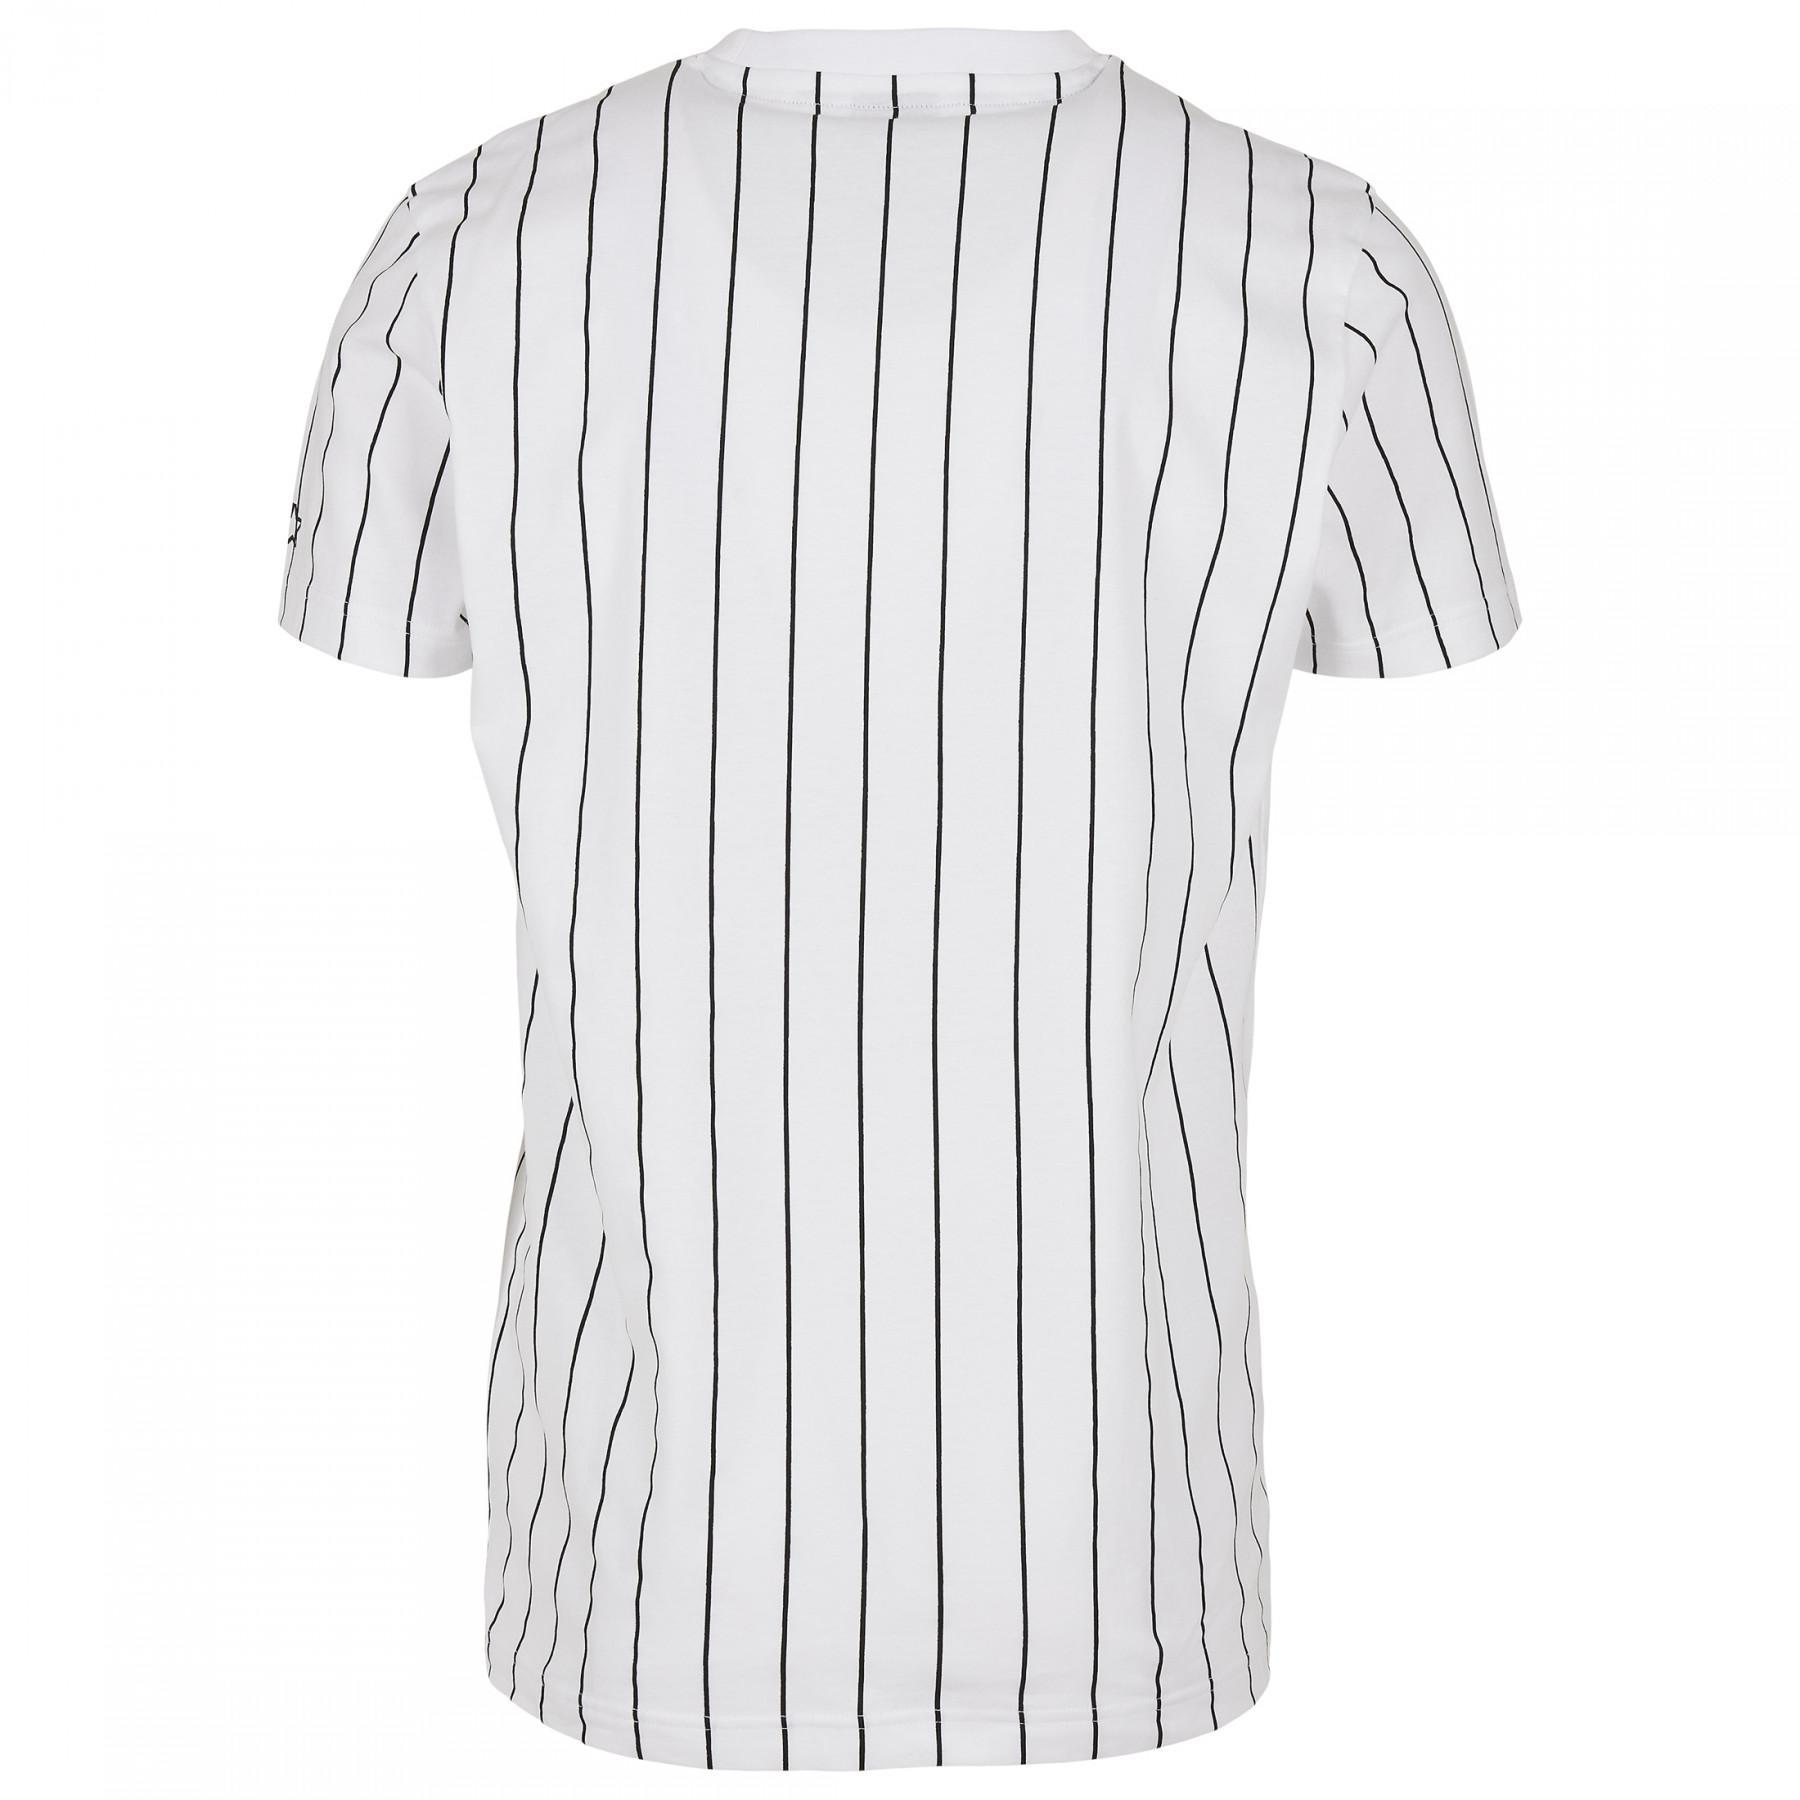 T-shirt Urban Classics starter pinstripe jersey